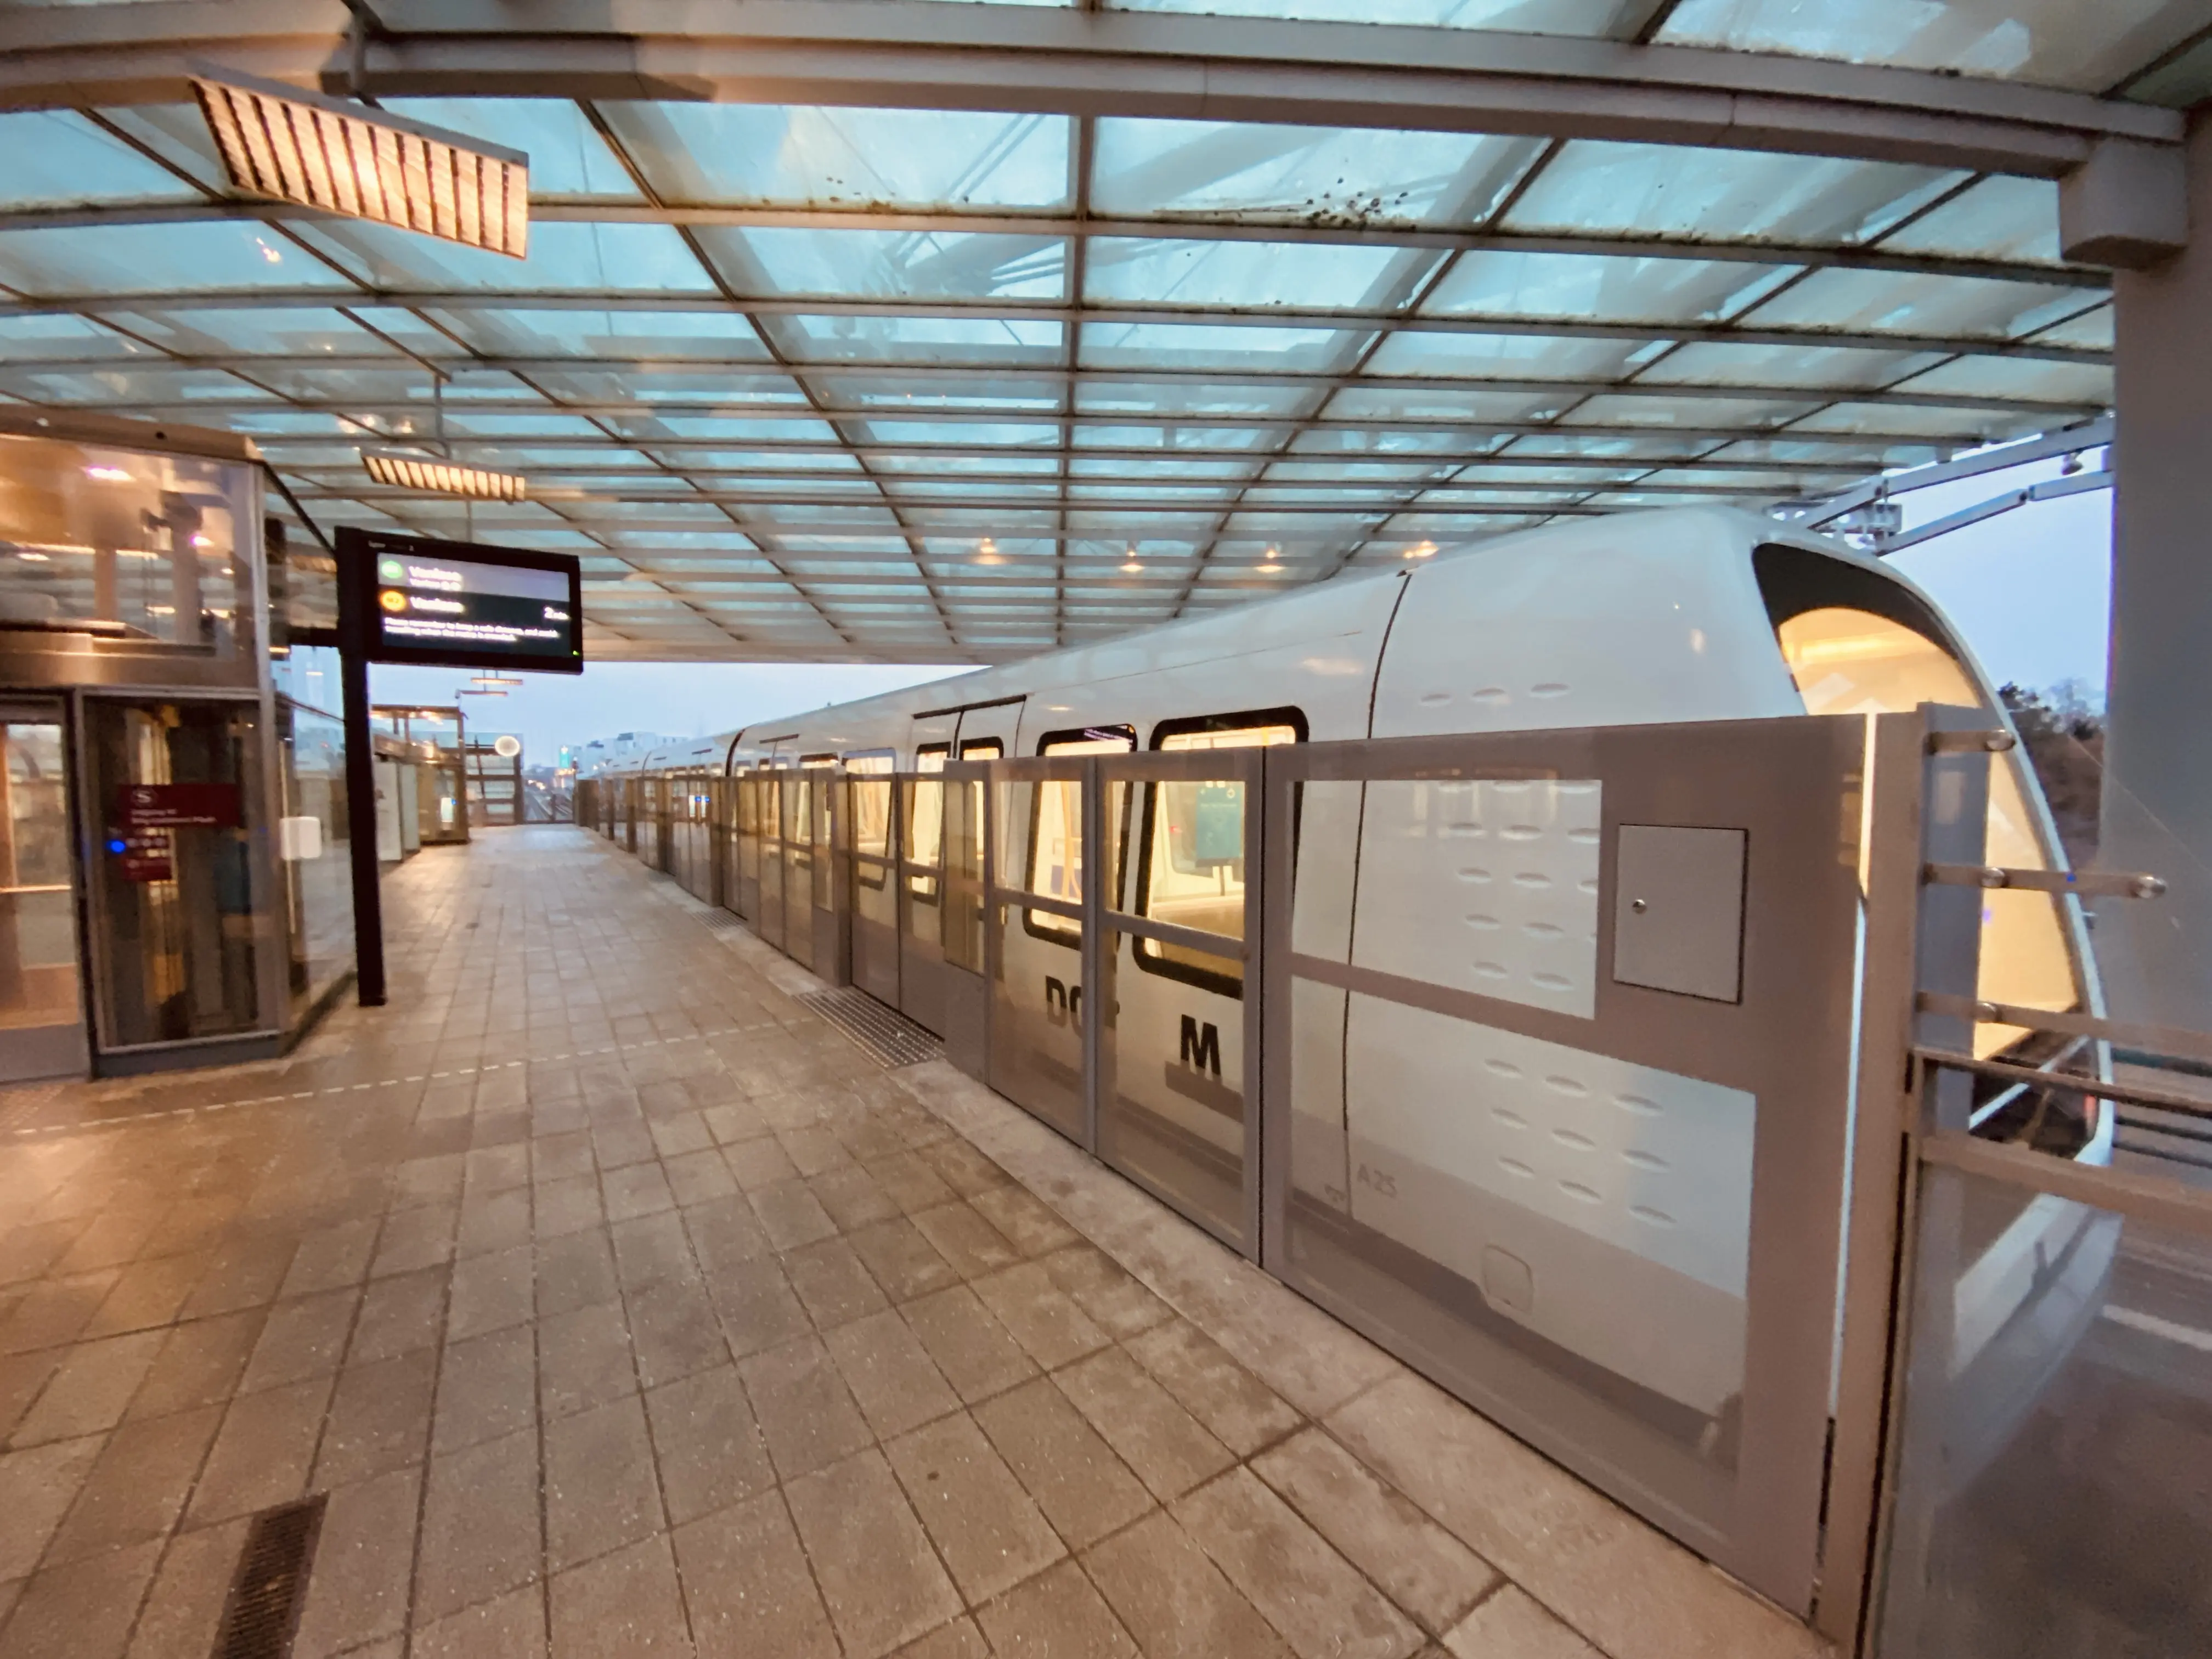 Billede af Flintholm Metrostation.